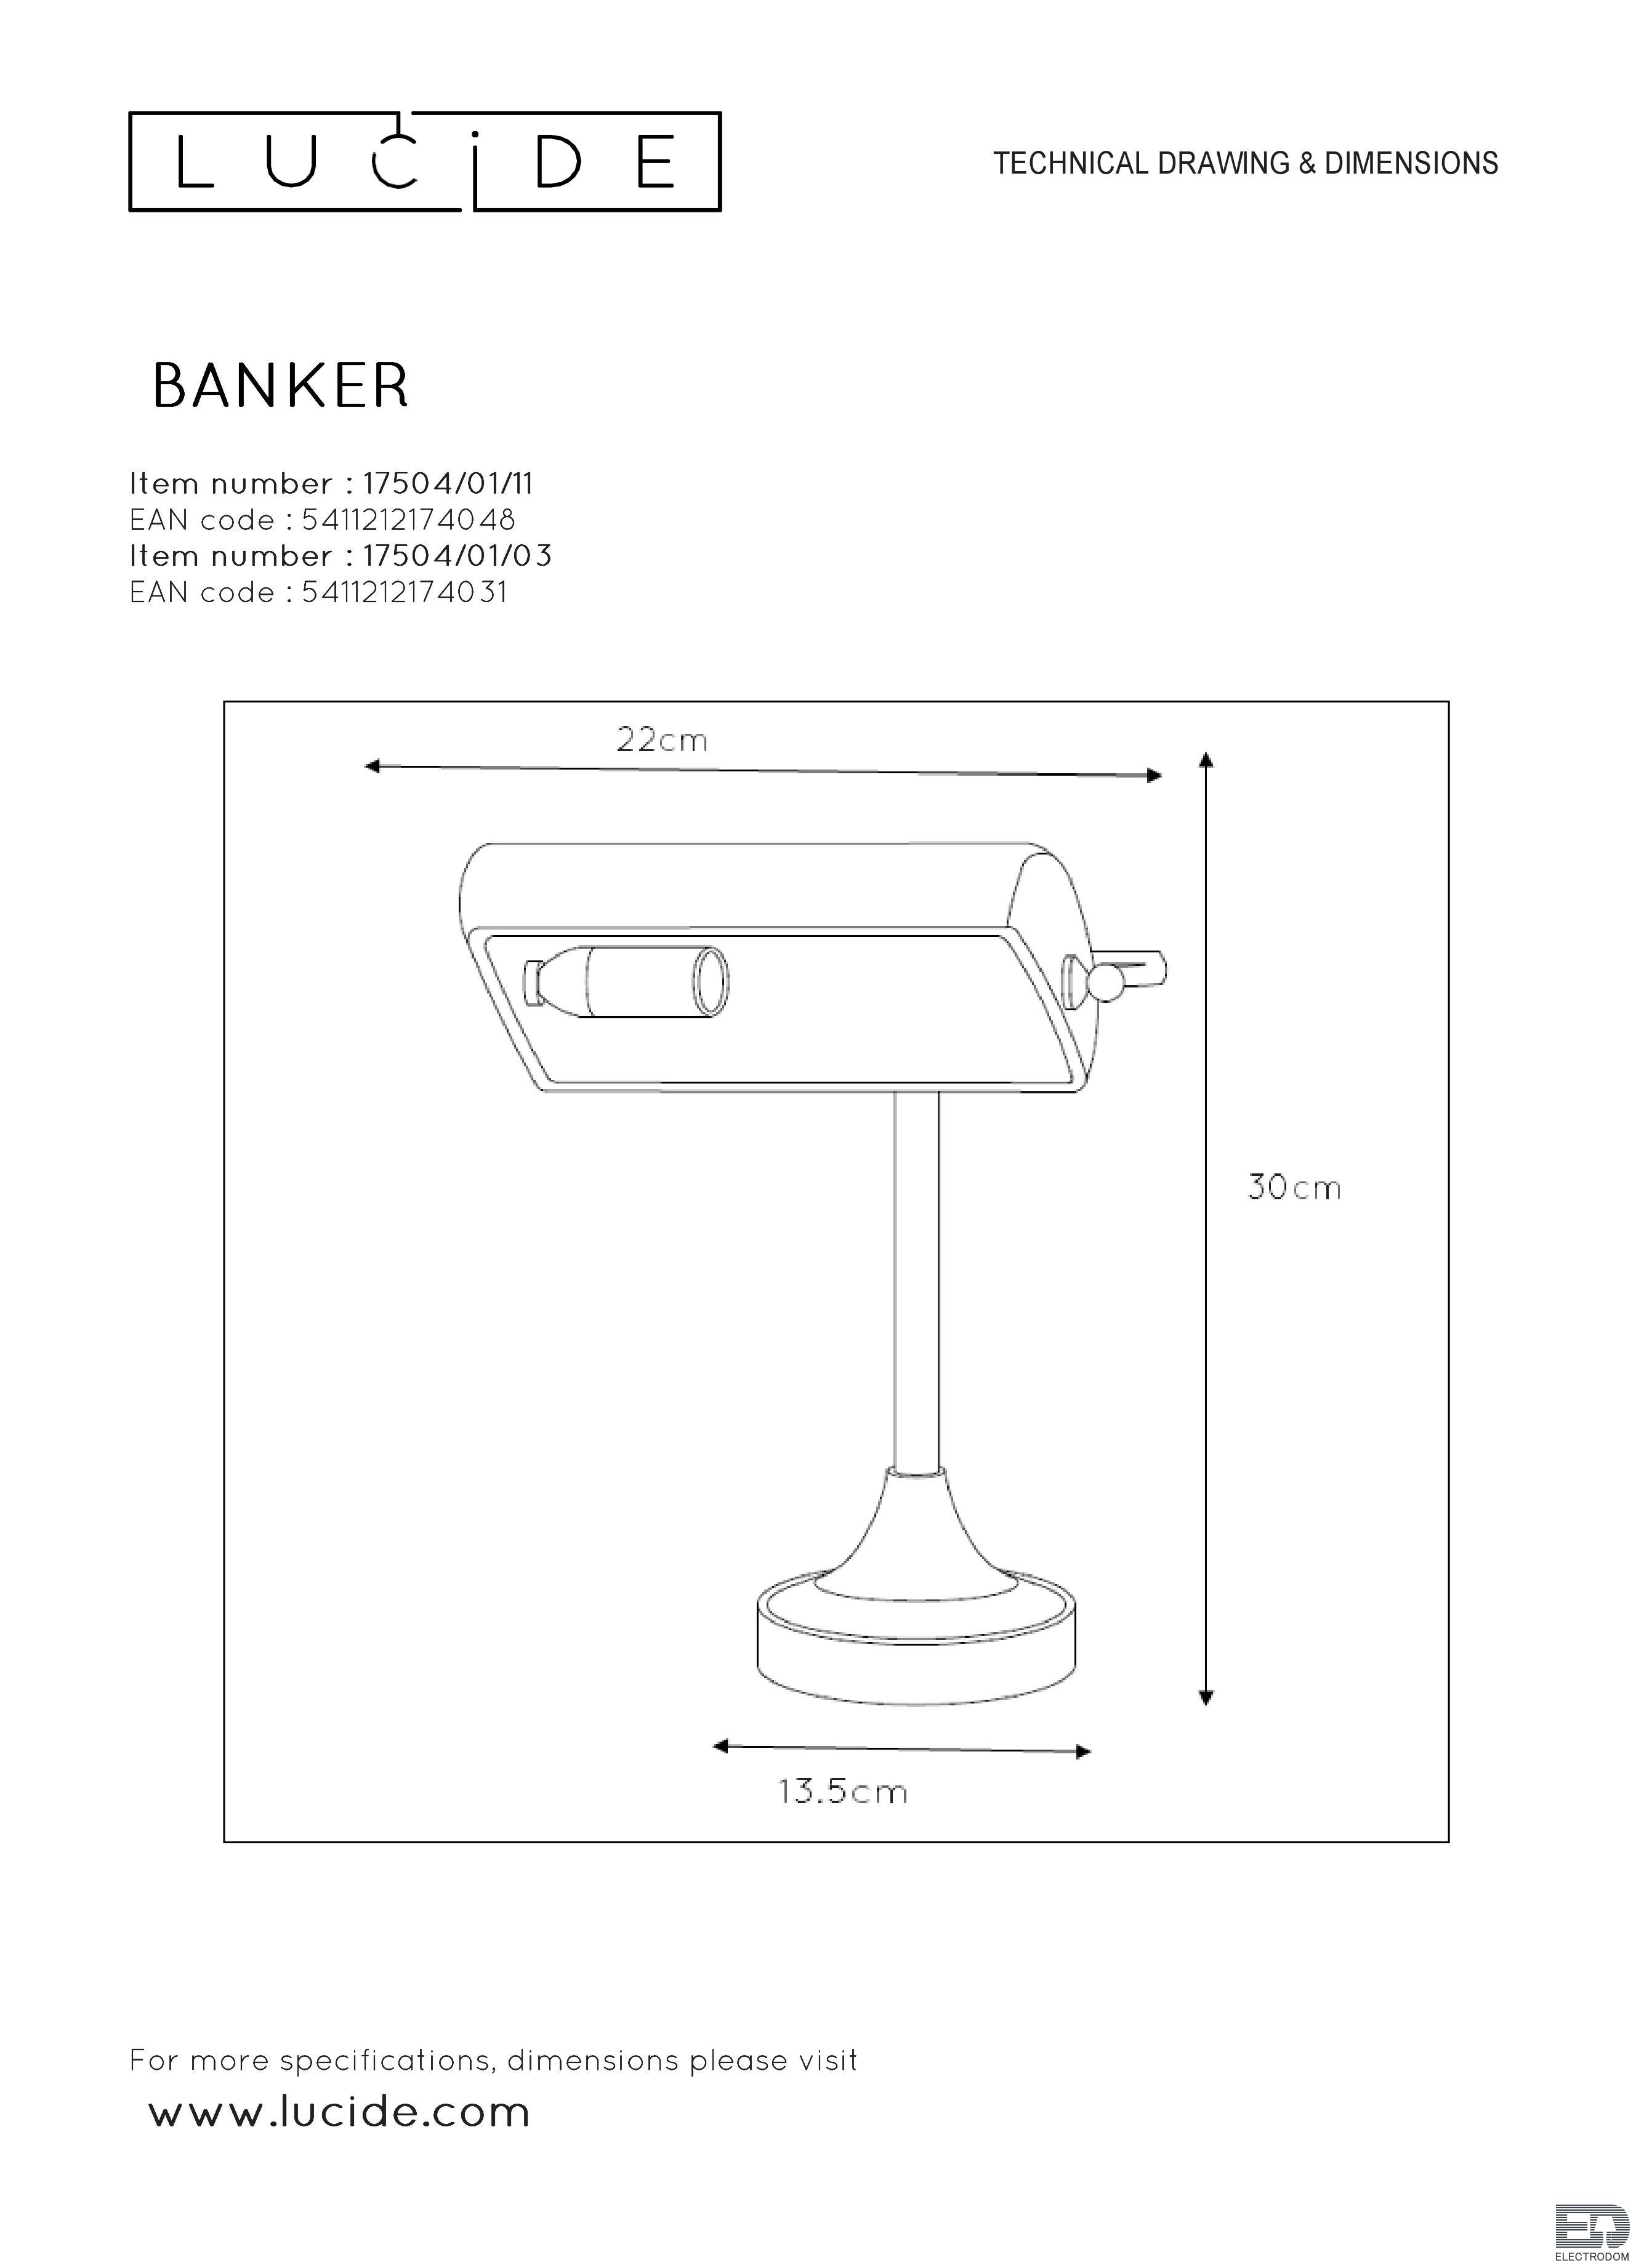 Настольная лампа Lucide Banker 17504/01/03 - цена и фото 5